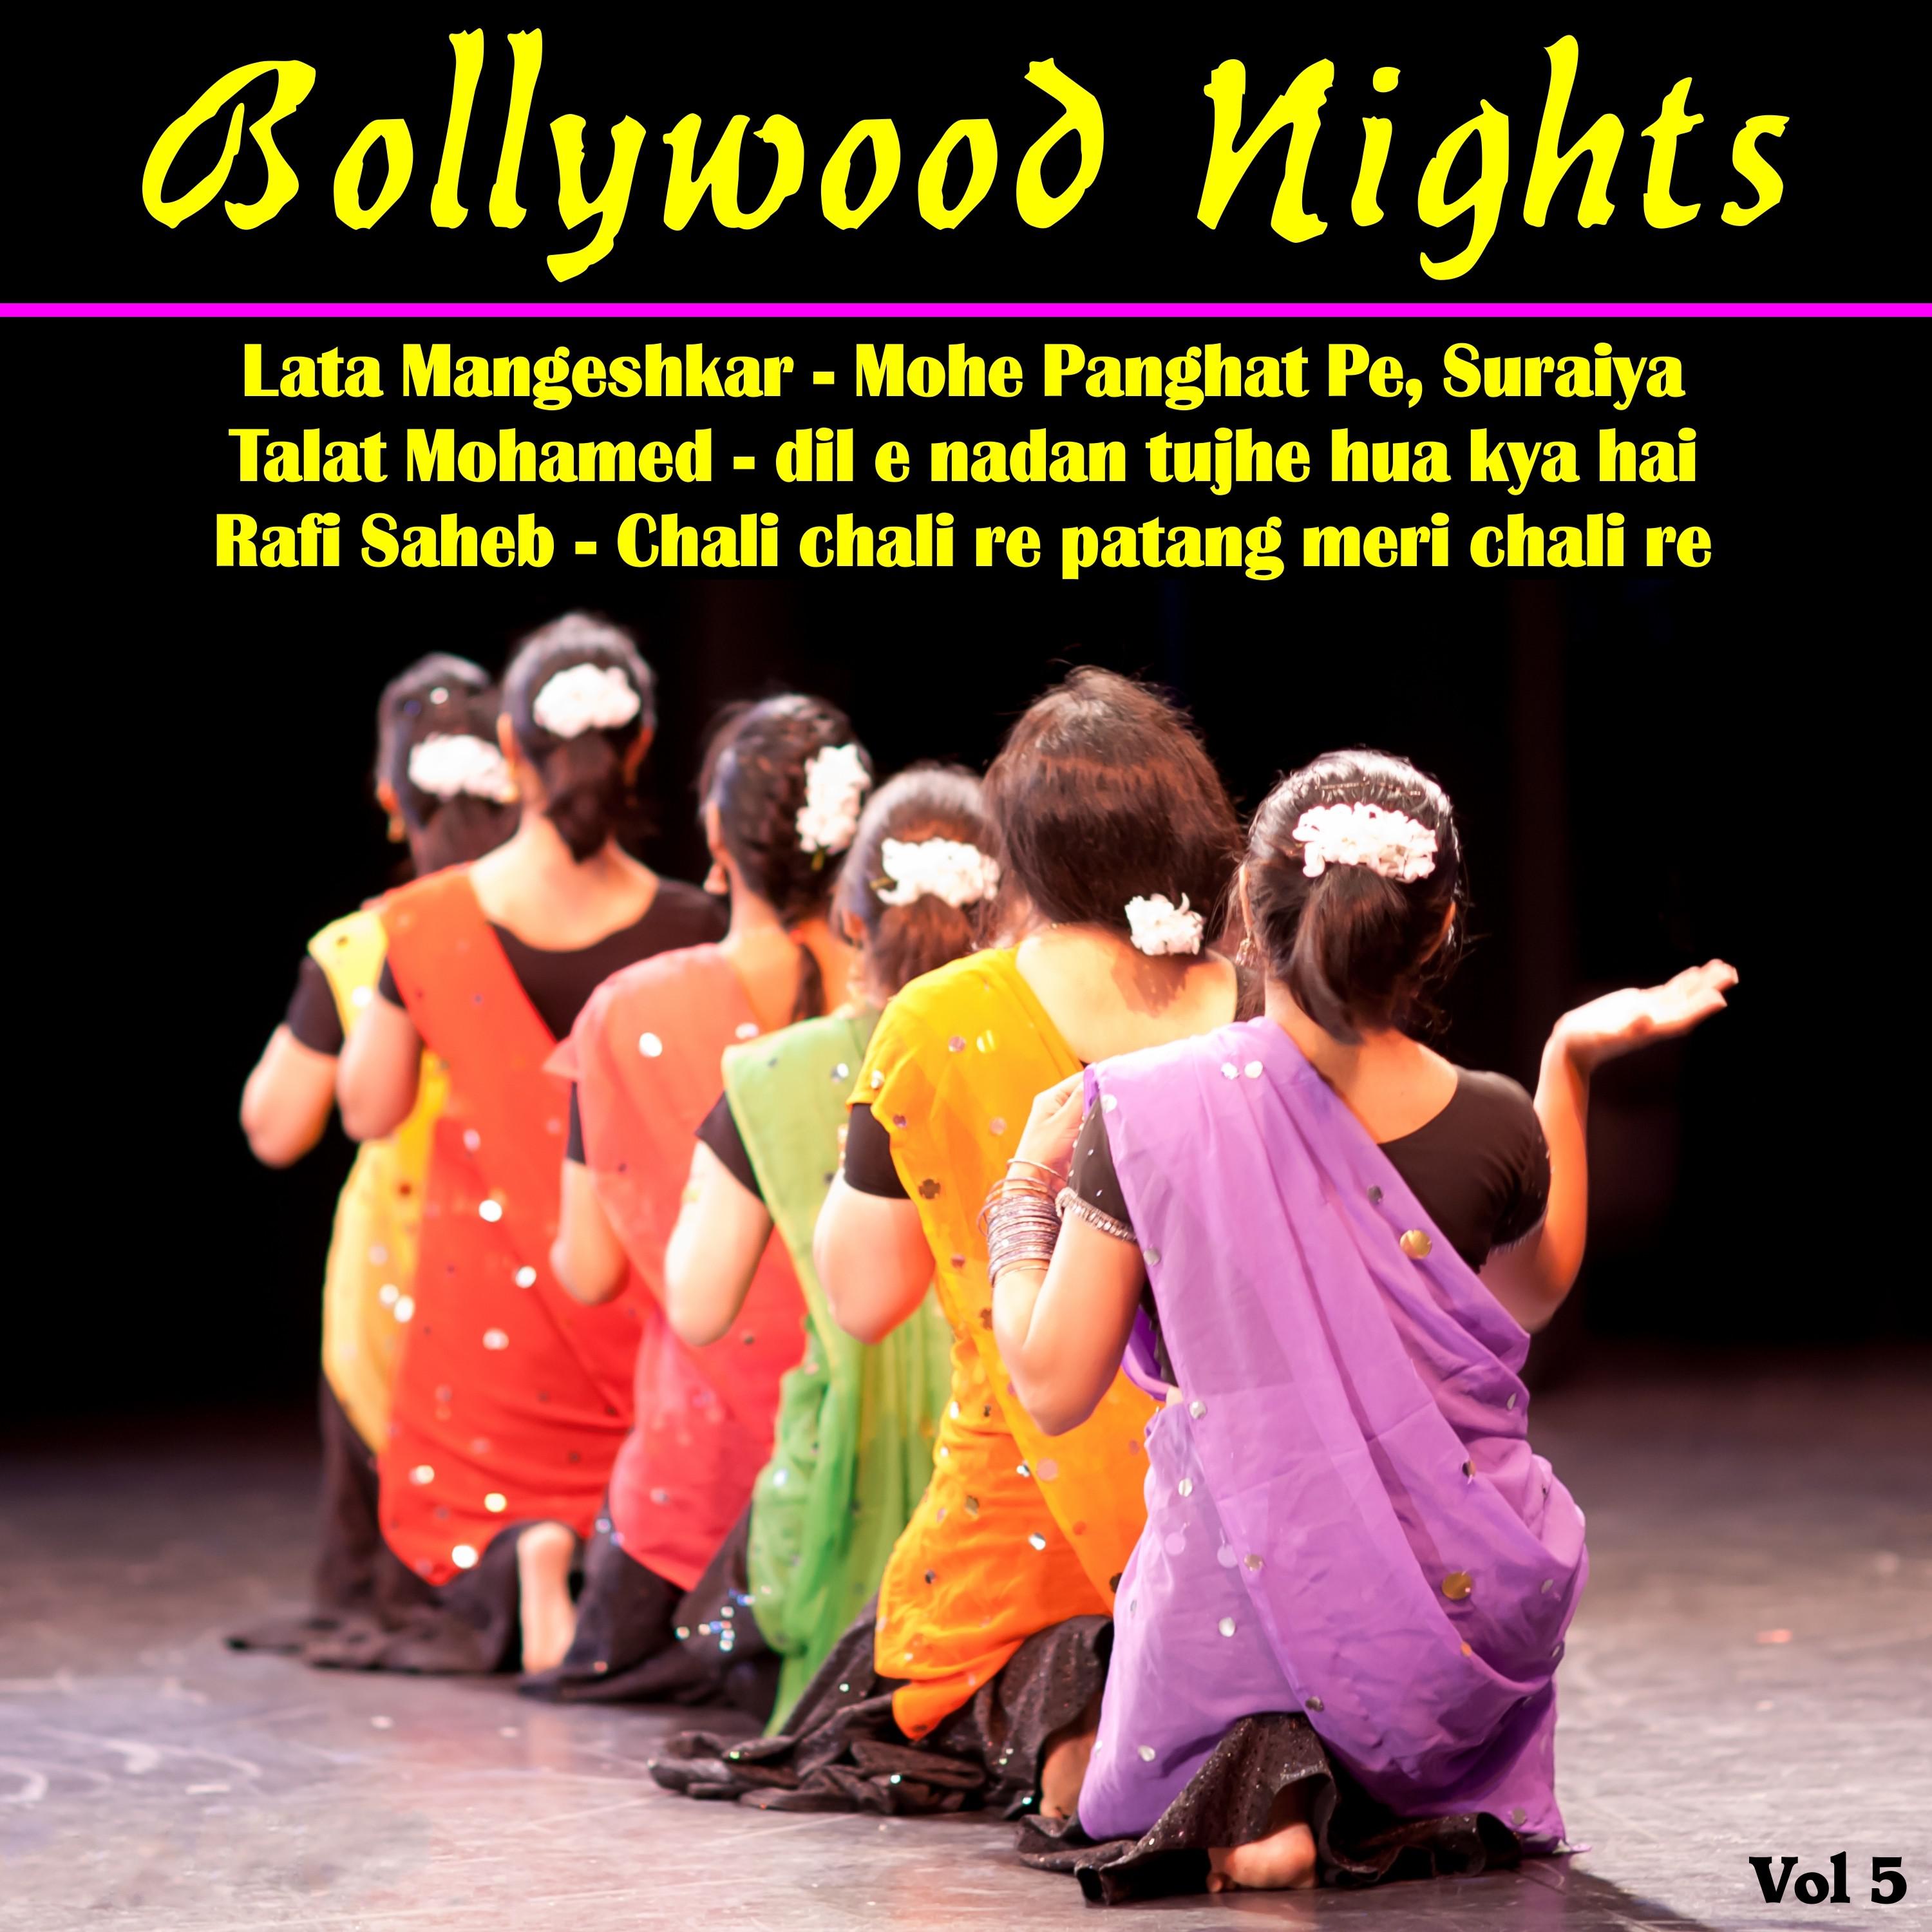 Bollywood Nights, Vol. 5